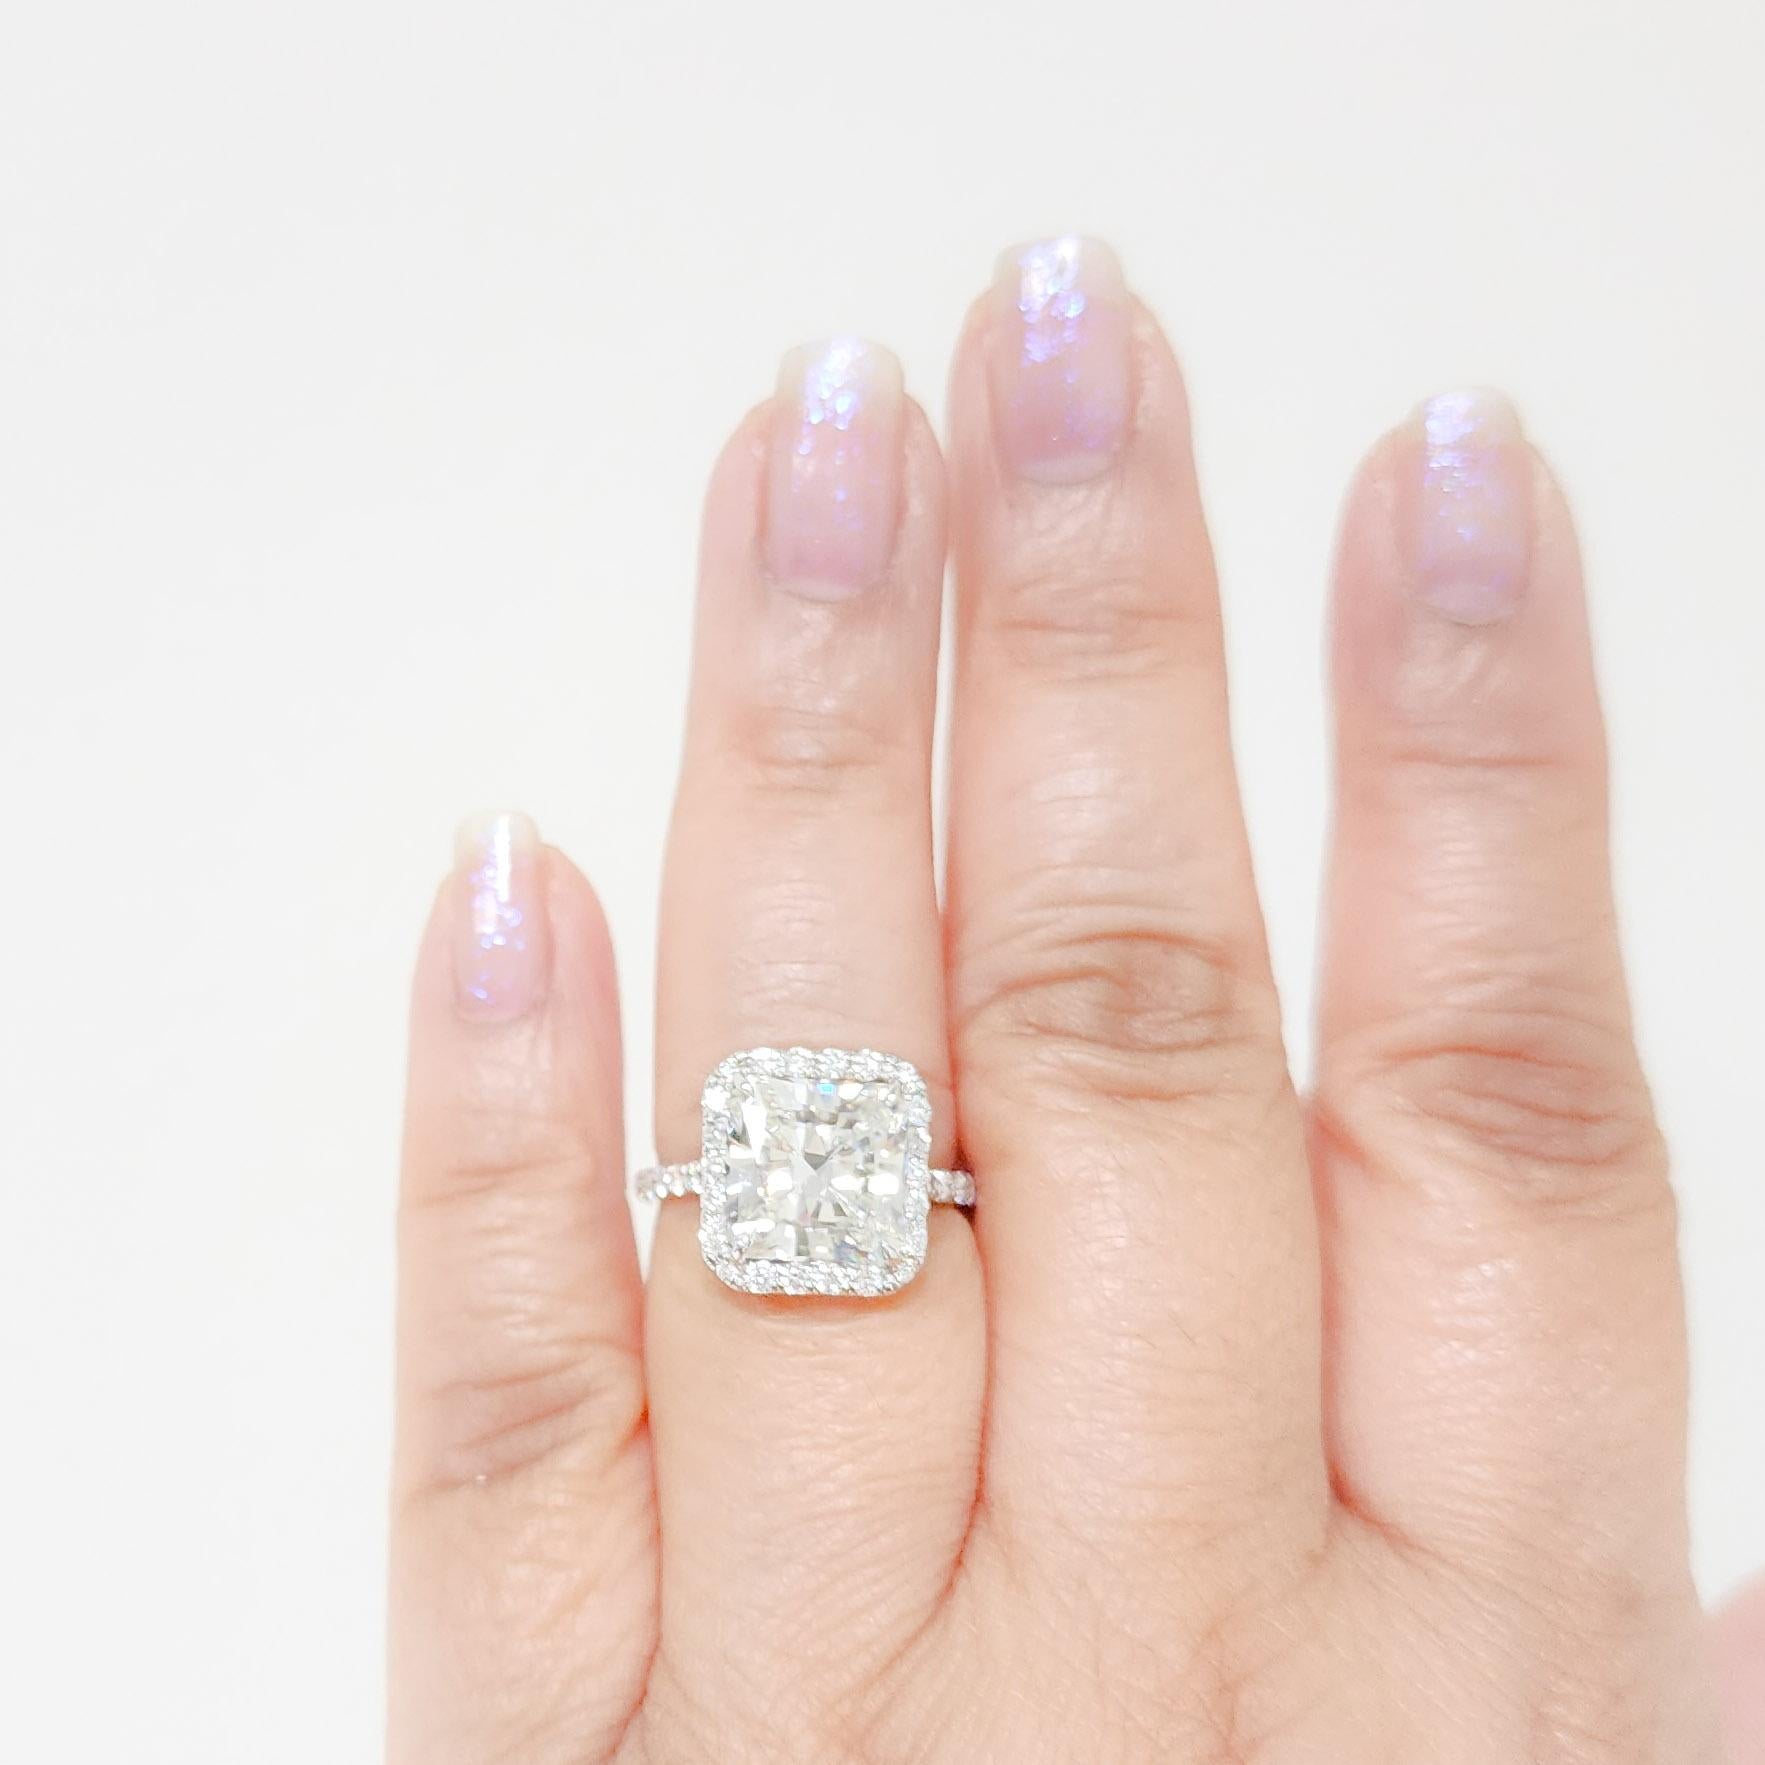 Wunderschöne 5.27 ct. GIA weißer Diamant strahlend I Farbe, VS2 Klarheit.  Handgefertigter Ring aus 18 Karat Weißgold mit runden weißen Diamanten guter Qualität.  Ring Größe 7.  Inklusive GIA-Zertifikat.